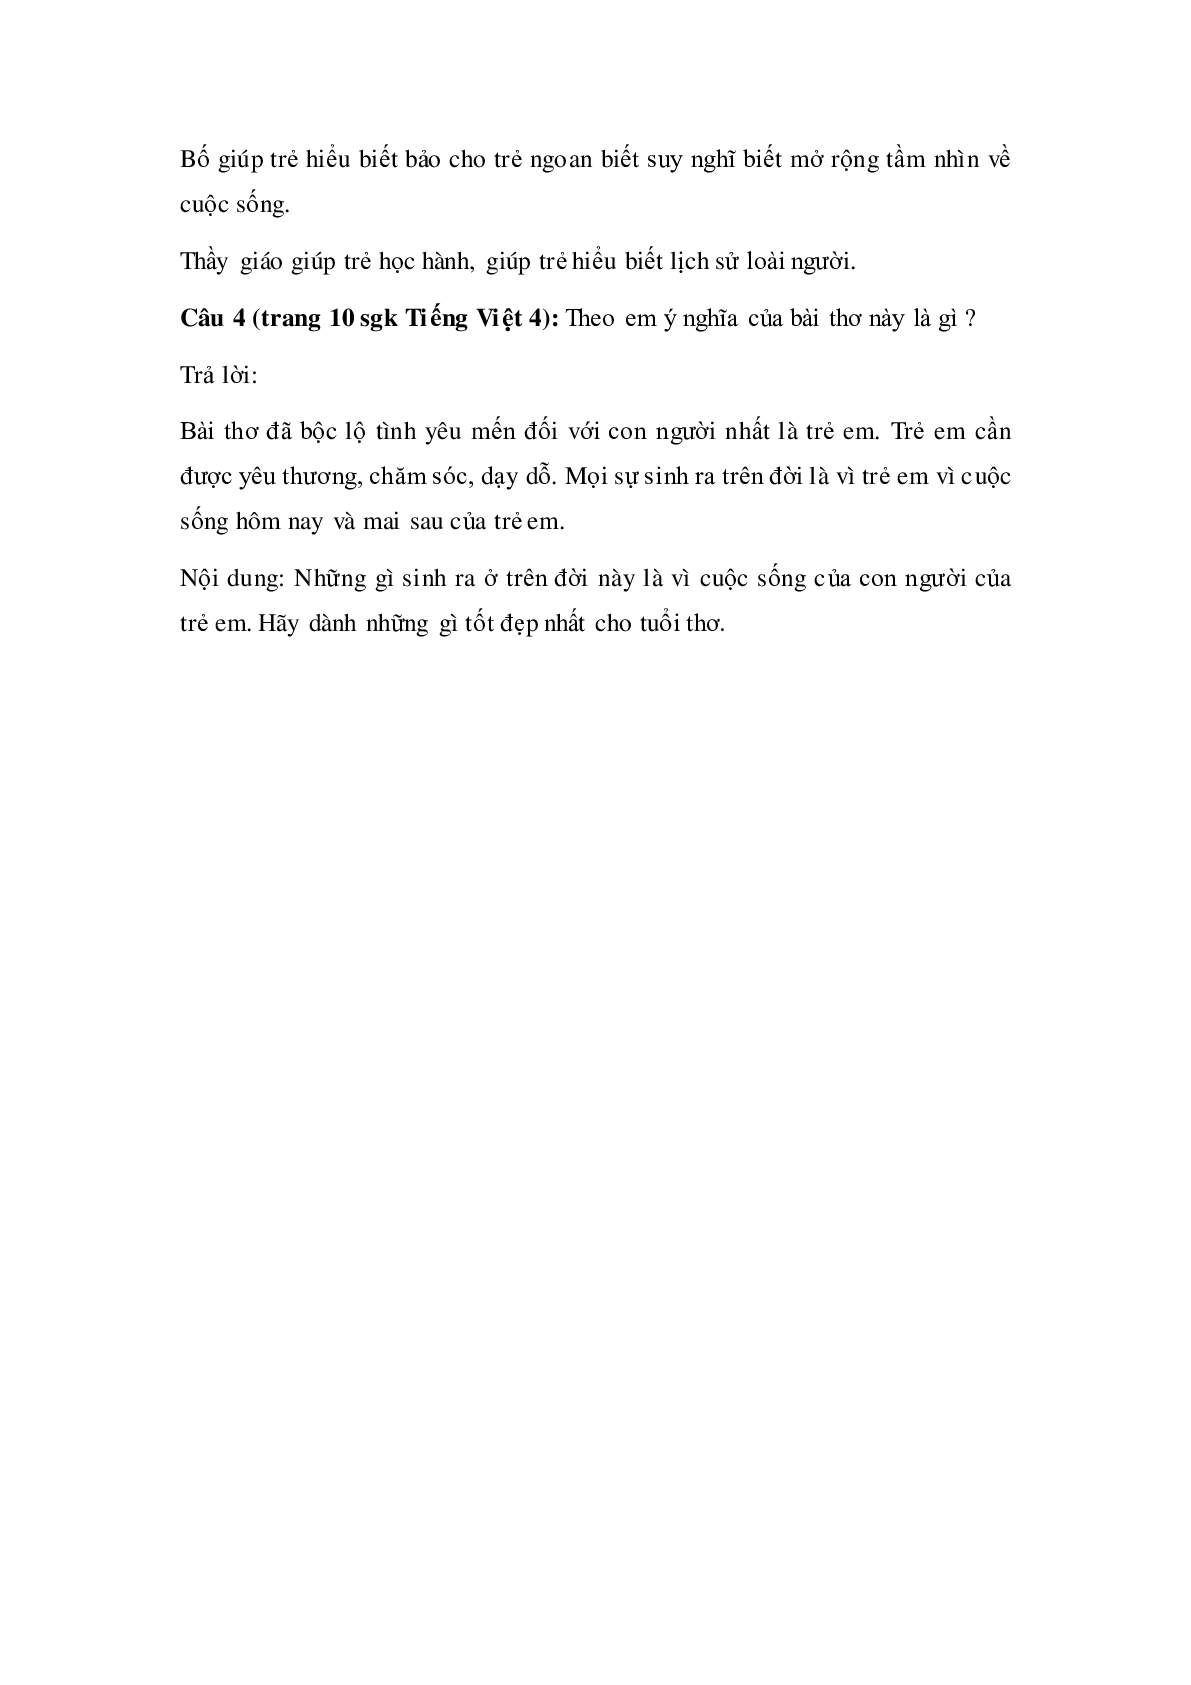 Soạn Tiếng Việt lớp 4: Tập đọc: Chuyện cổ tích về loài người mới nhất (trang 3)